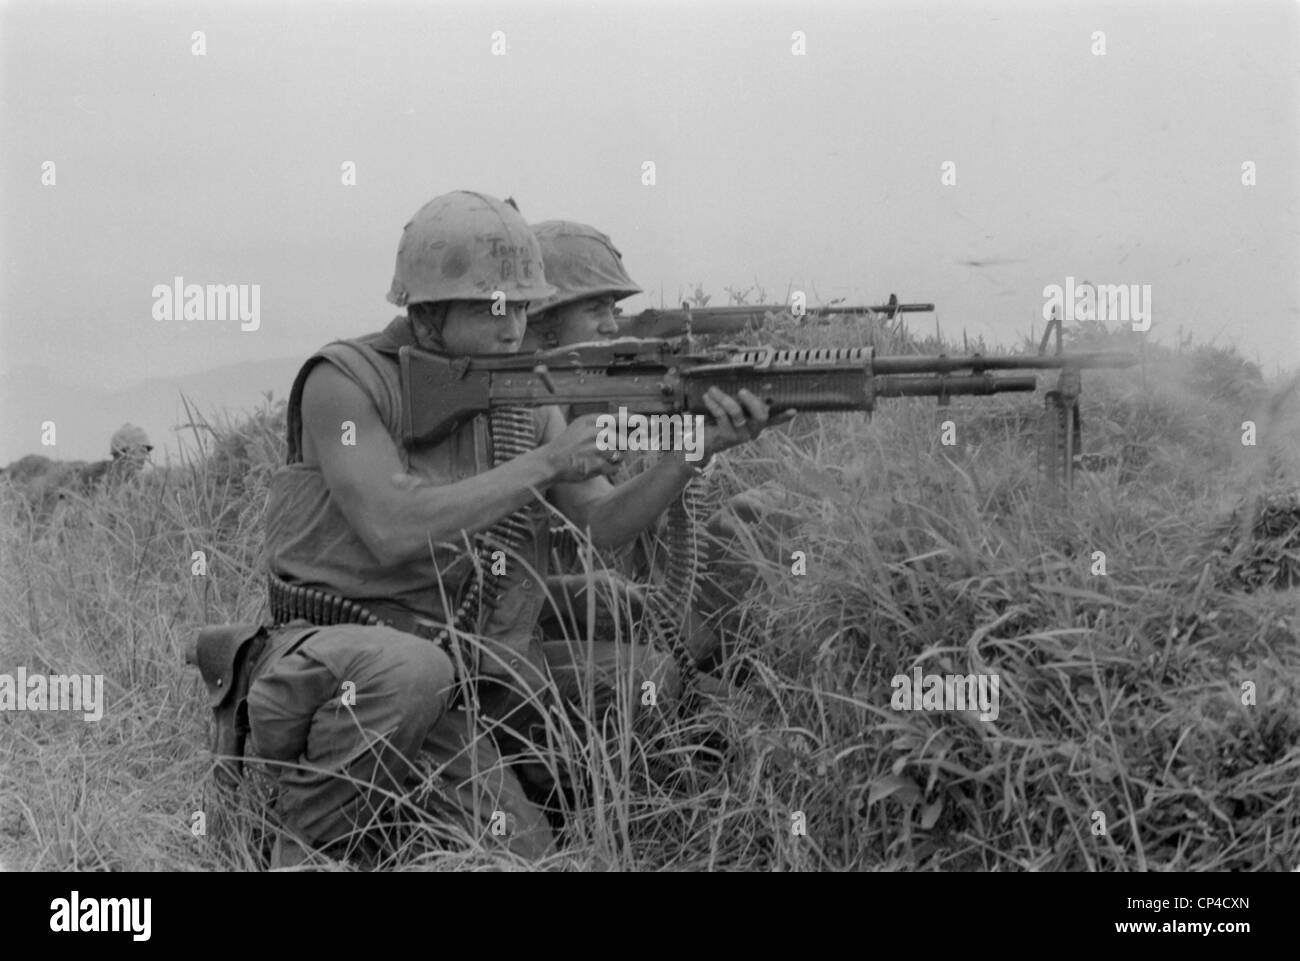 Guerra del Vietnam. US Marine mitrailleur e rifleman incendio presso il nemico vicino alla zona demilitarizzata in Vietnam. Maggio 13, 1967. Foto Stock